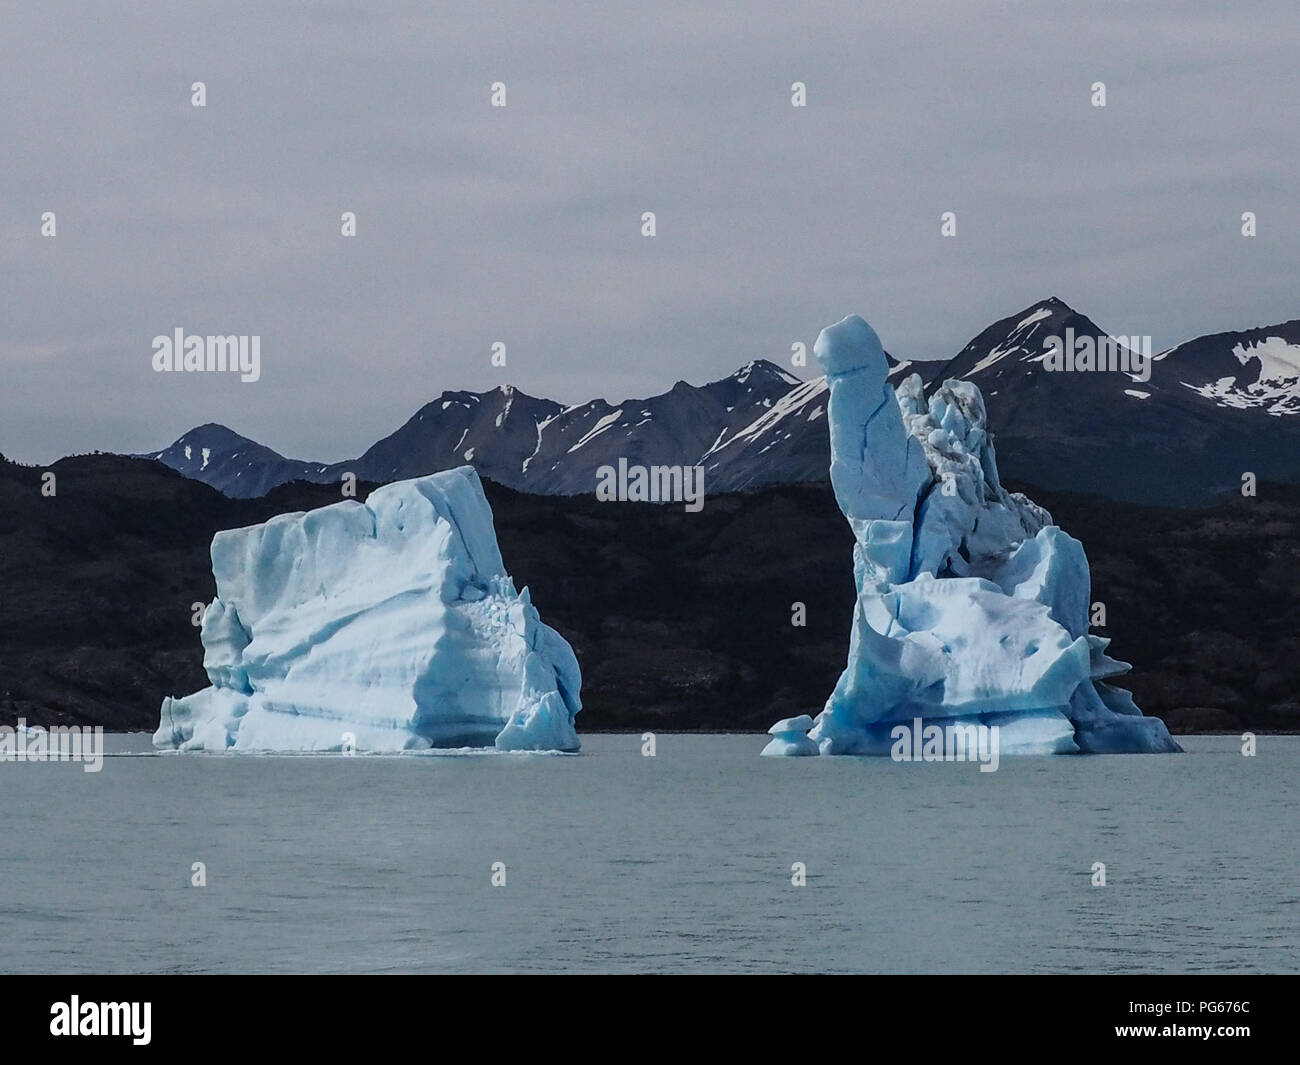 Des icebergs flottent dans le lac Argentino, El Calafate, Argentine. Banque D'Images